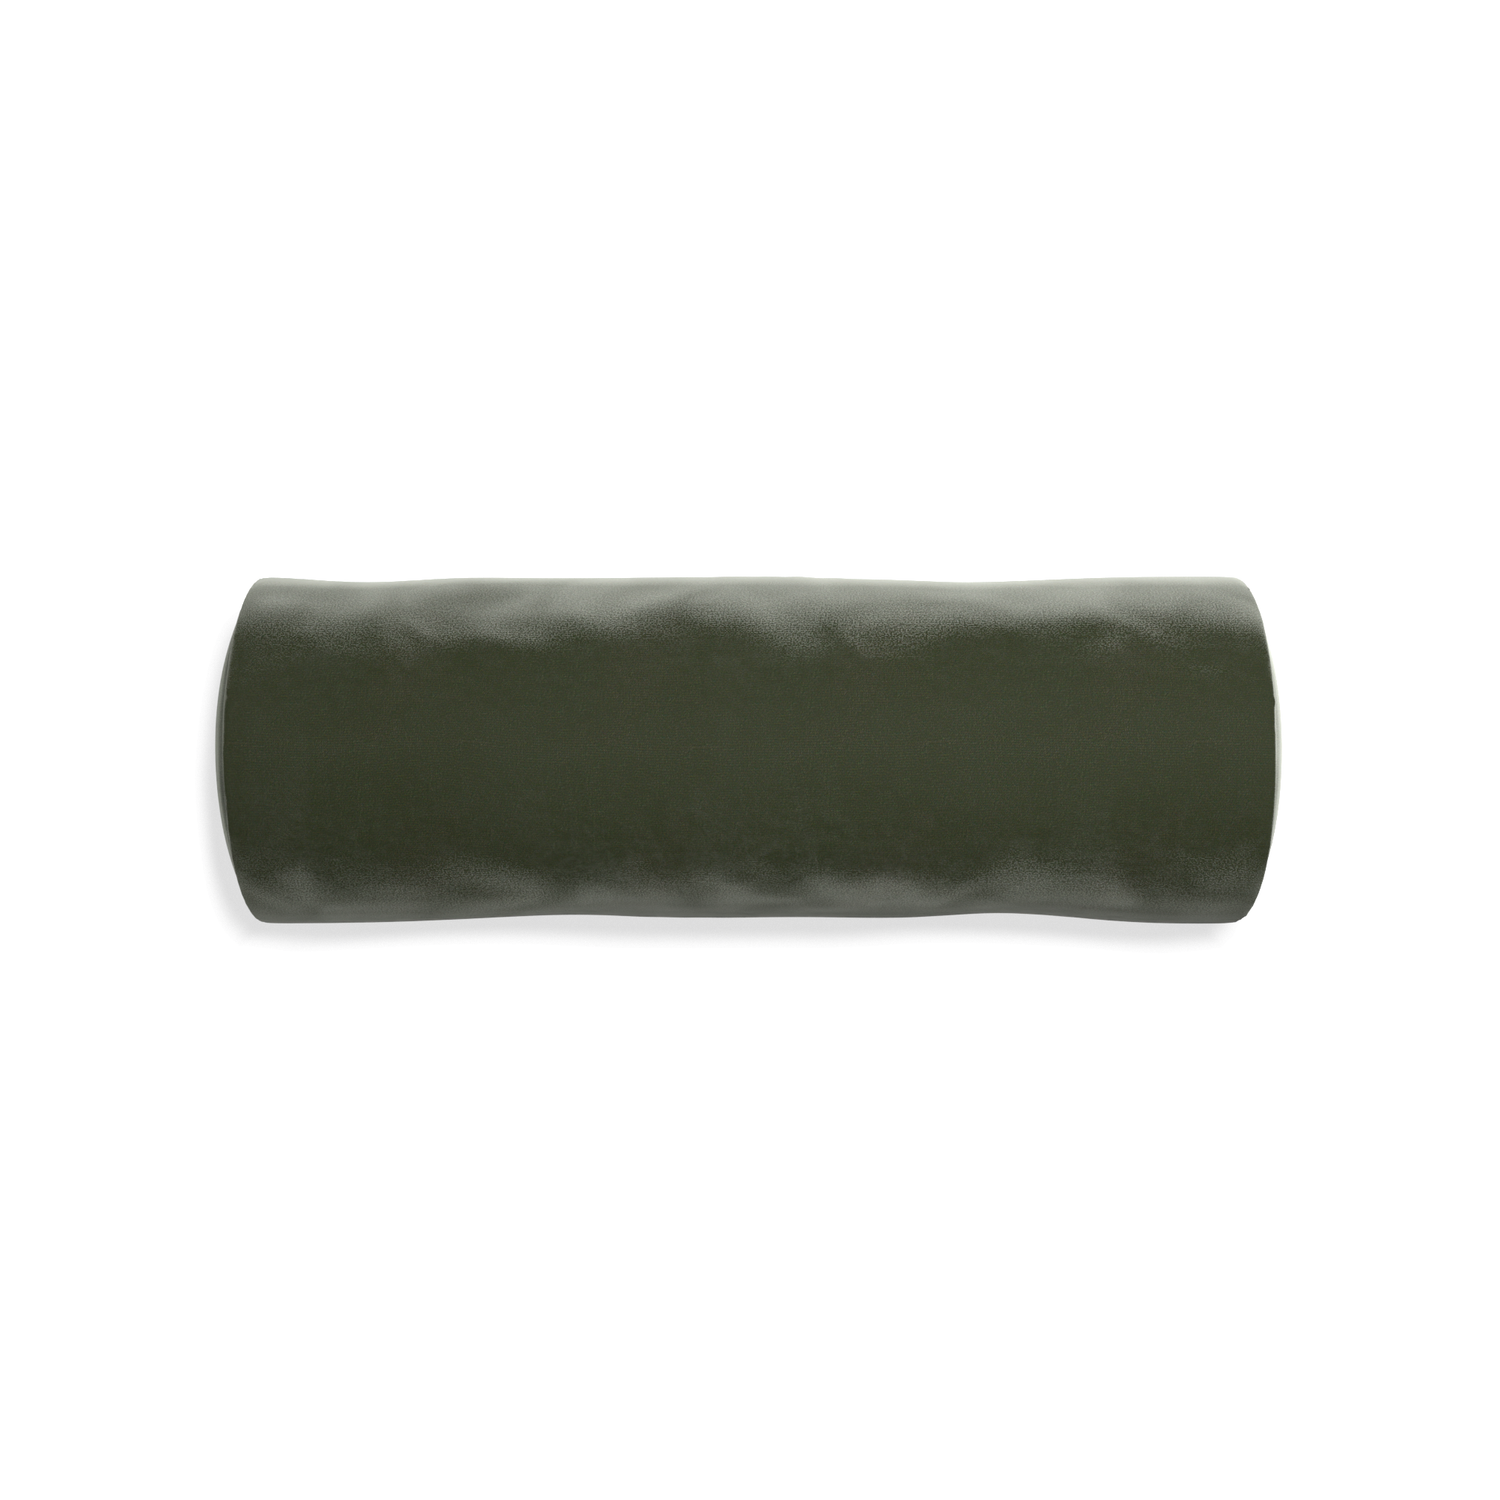 bolster fern green pillow